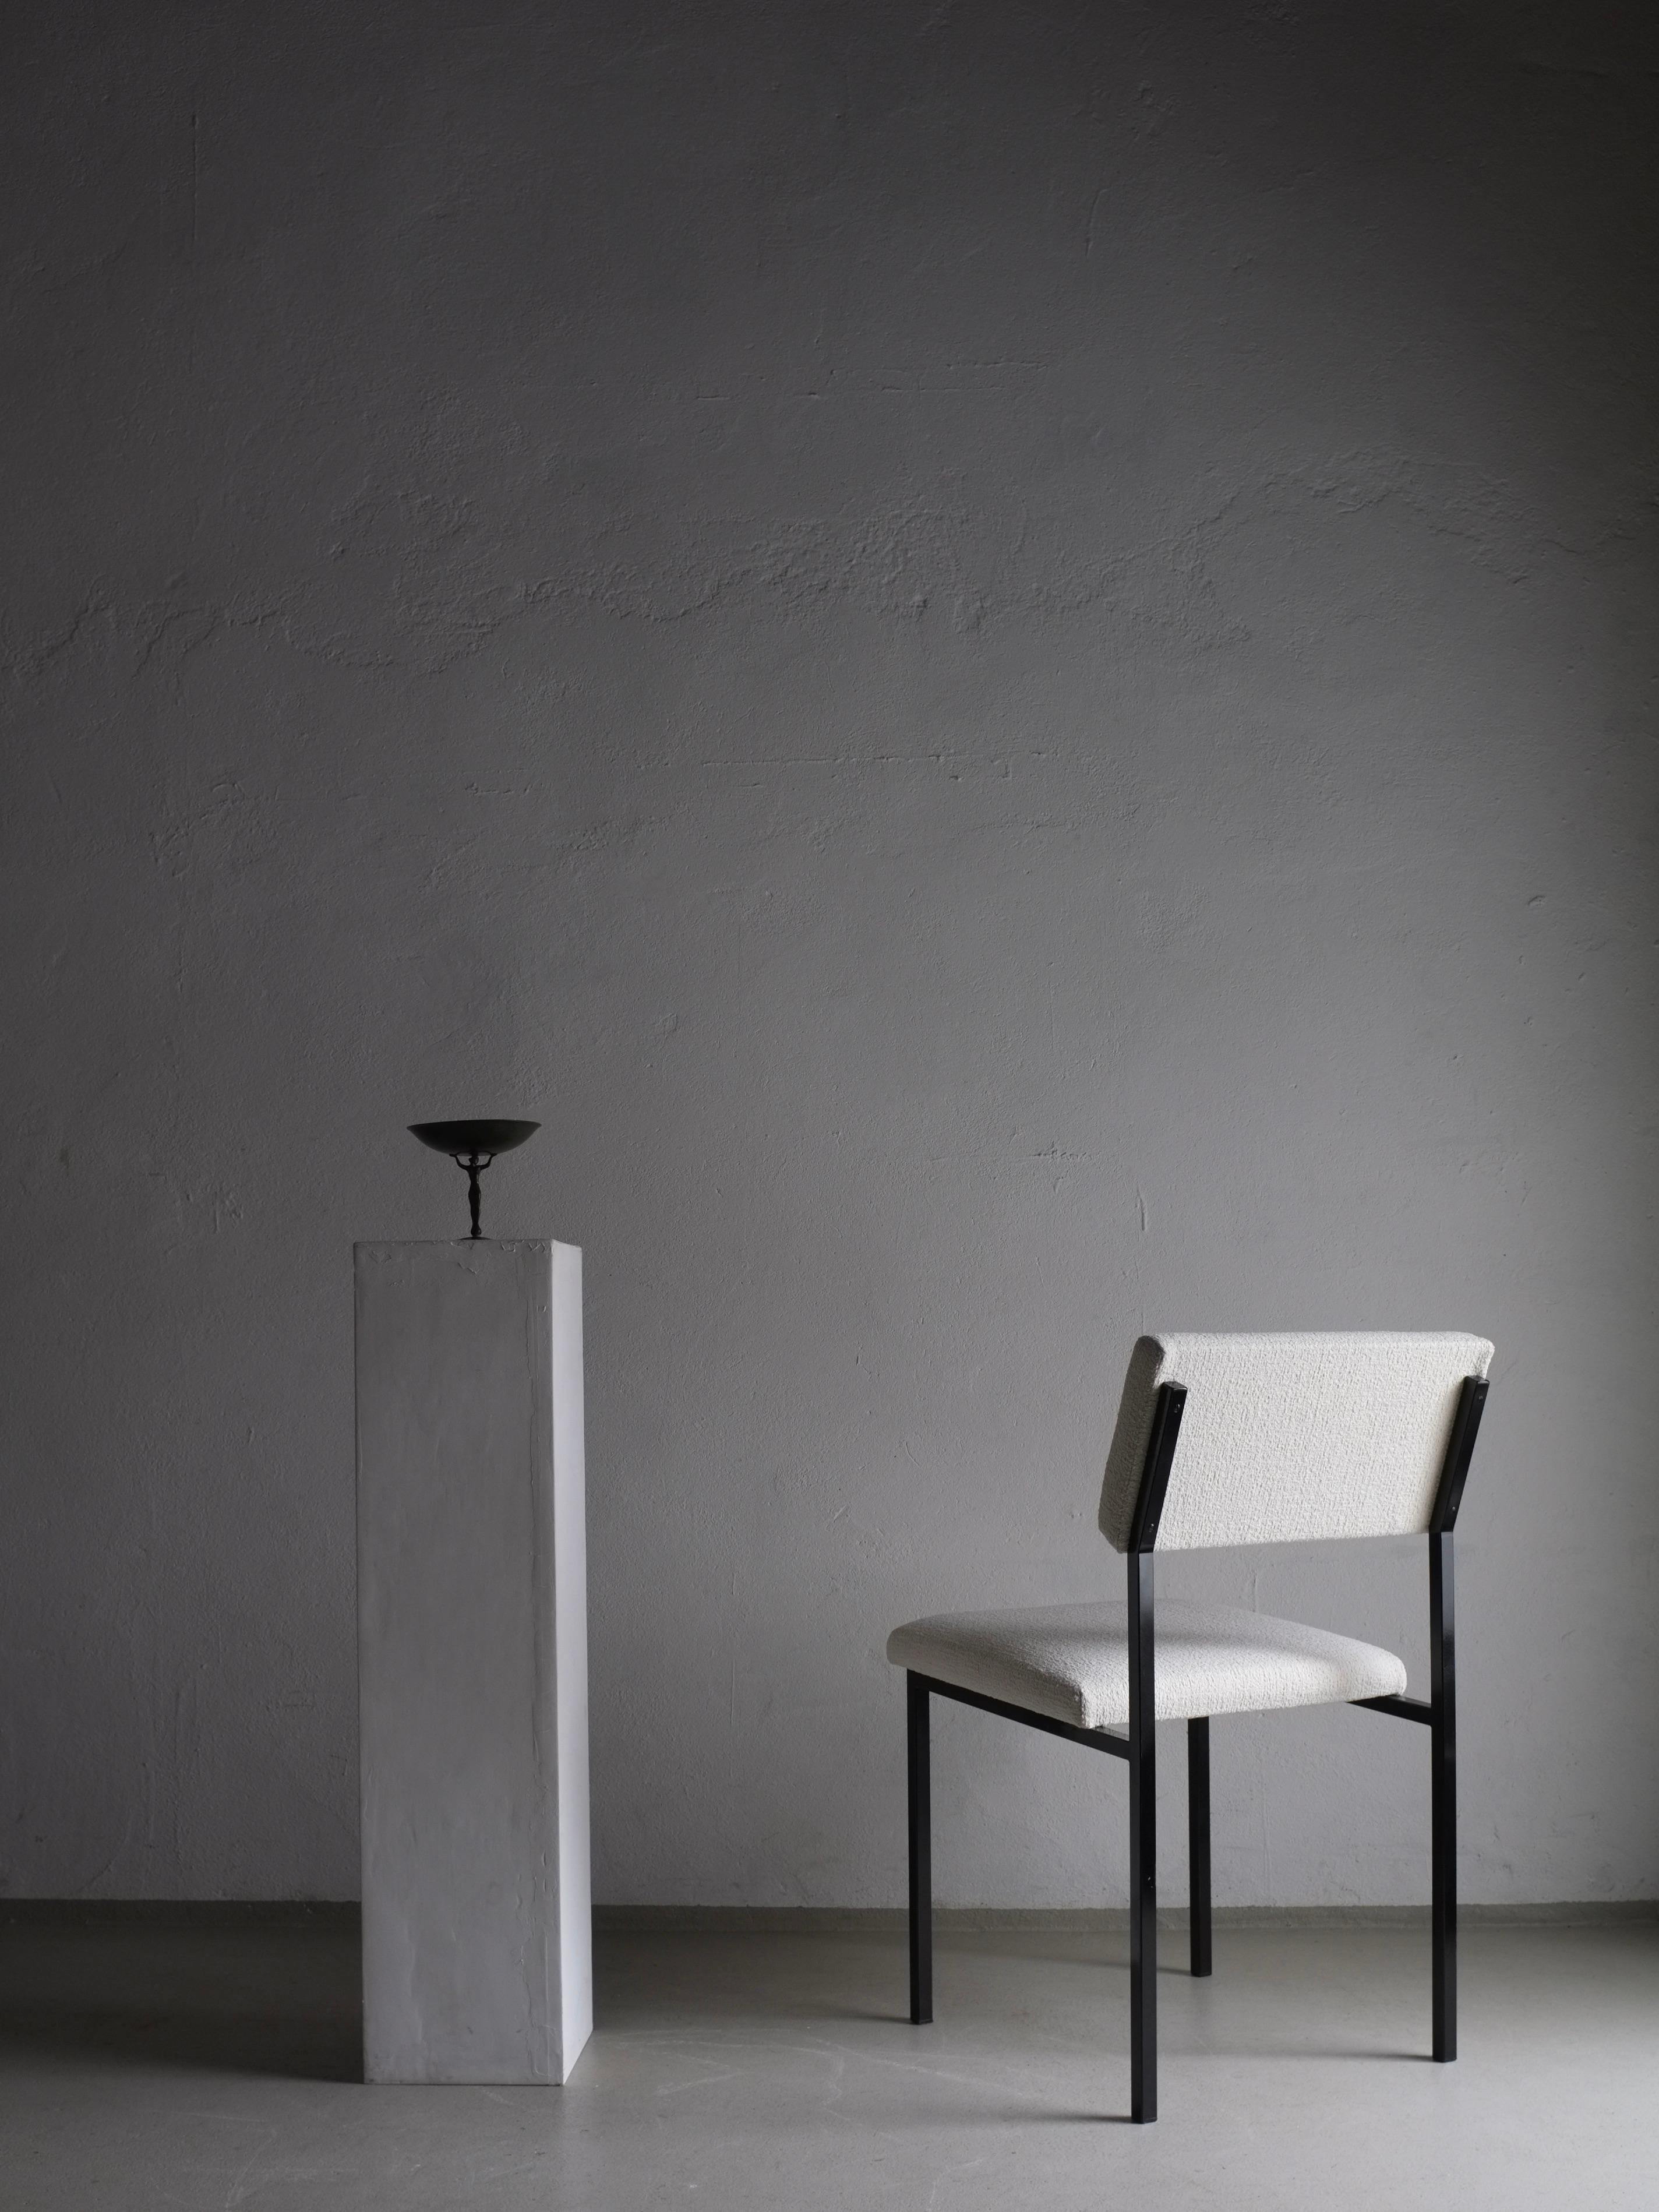 Ensemble de 2 chaises vintage en métal peint en noir, reupholstered with Dedar boucle fabric. Gerrit Veenendaal a conçu les chaises pour Kembo Rhenen dans les années 1960.

Informations complémentaires :
Pays de fabrication : Pays-Bas
Période :